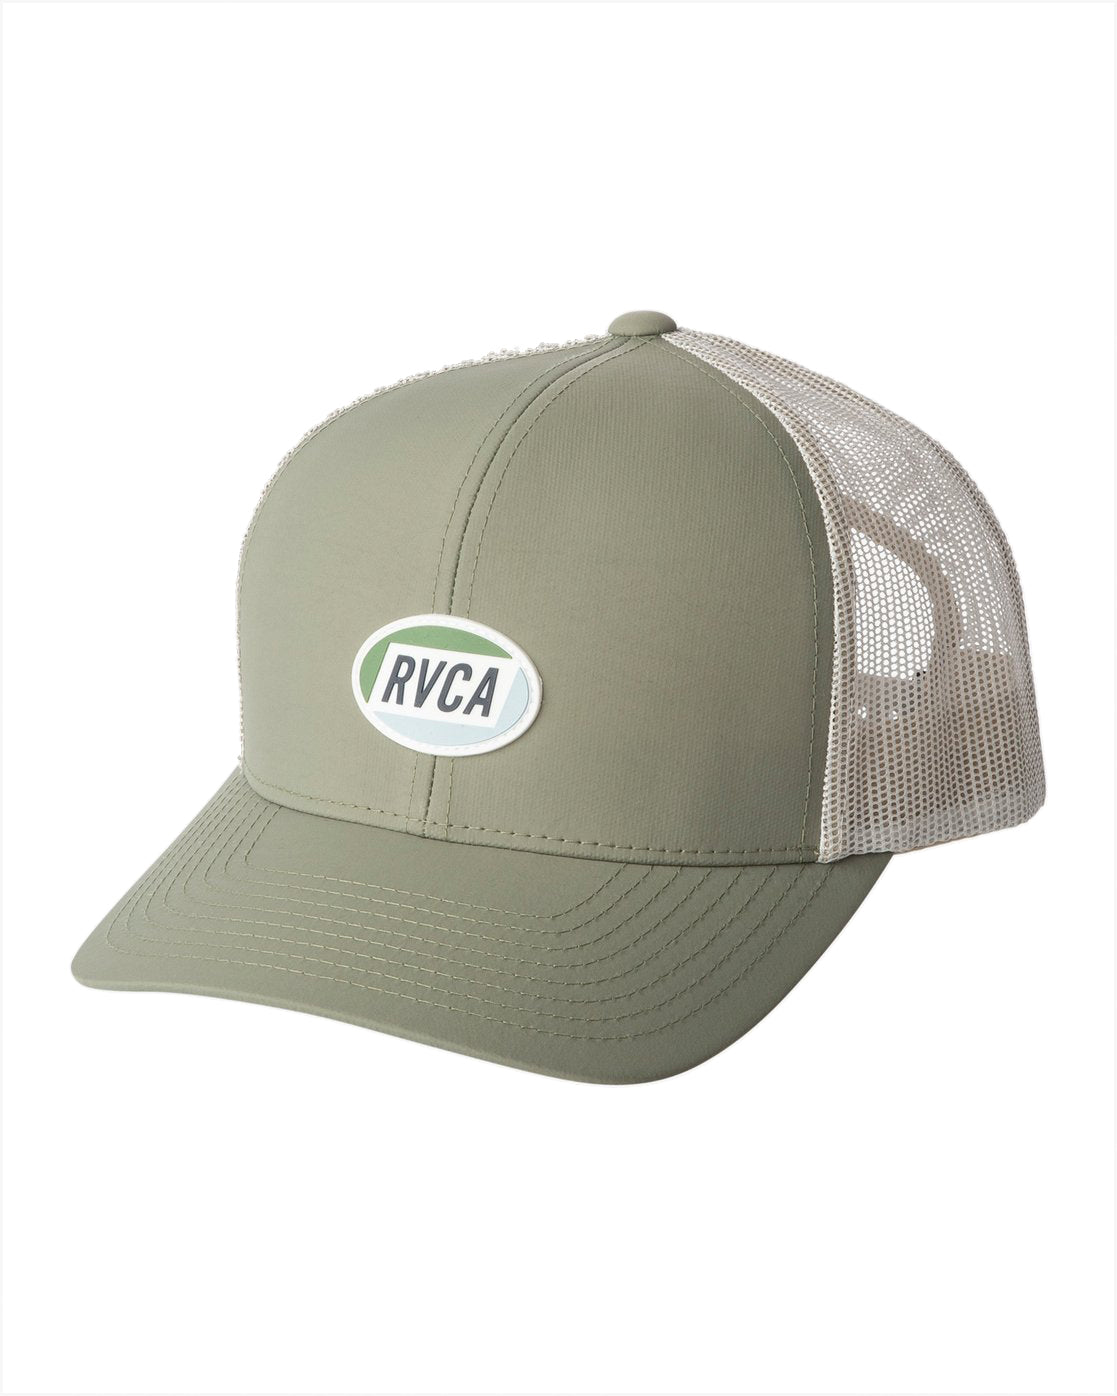 RVCA Cortex Trucker Hat